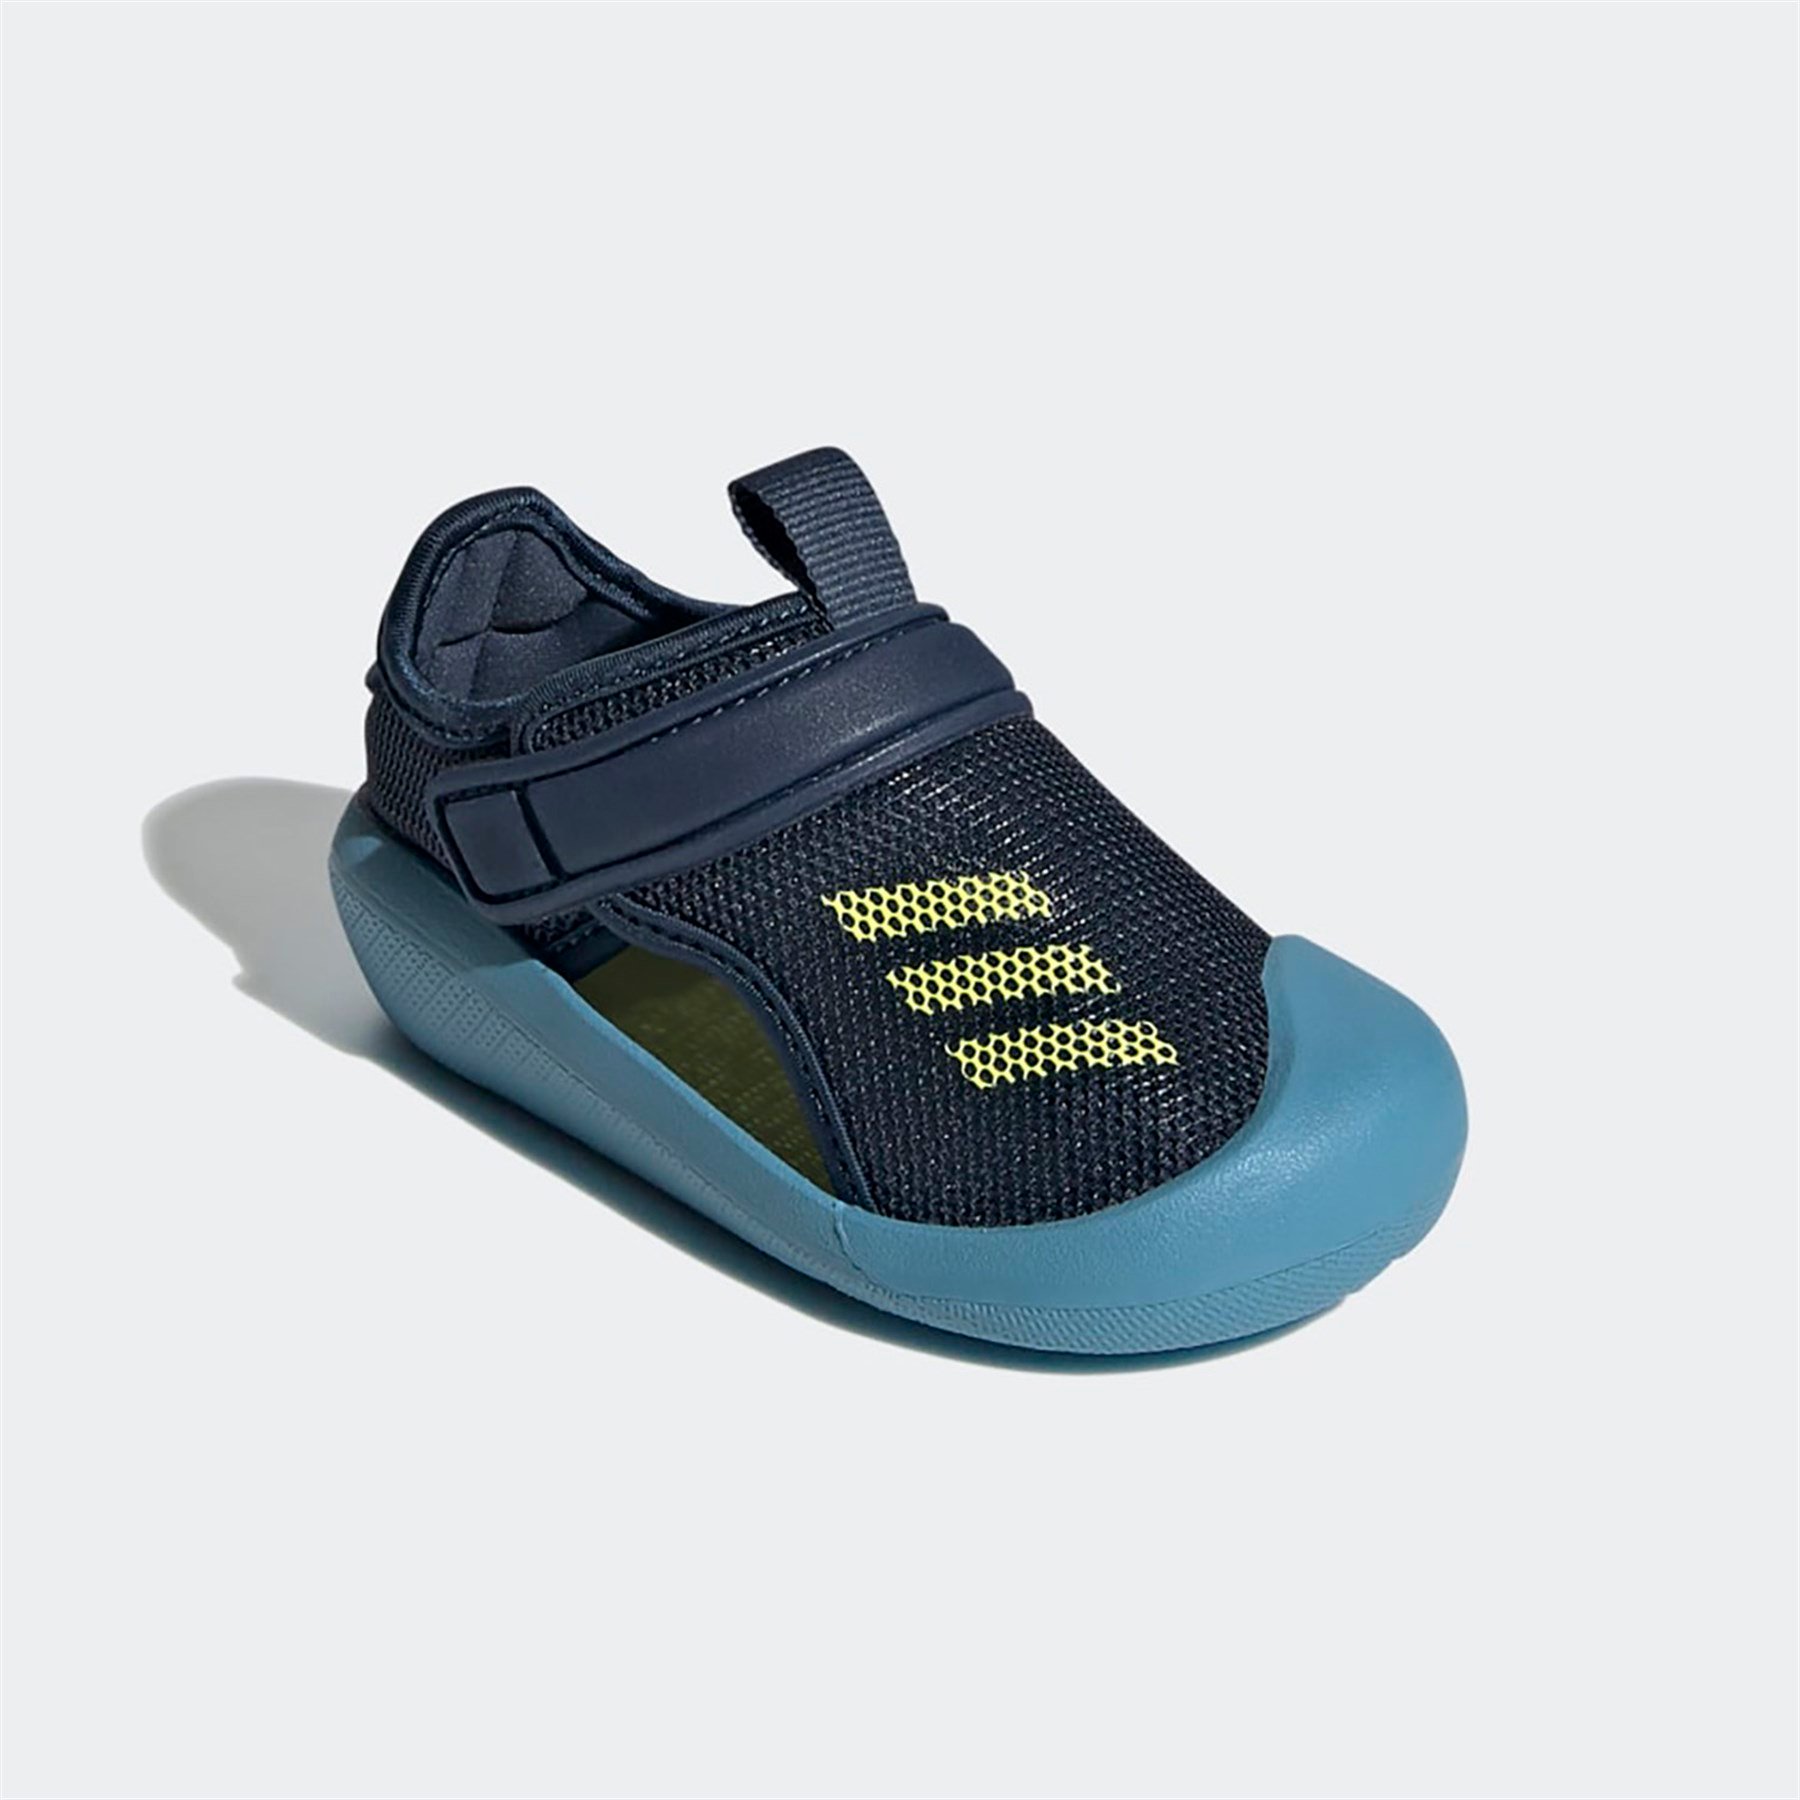 Adidas Erkek Bebek Sandalet Altaventure Ct I Fy8933 ALTAVENTURE CT I